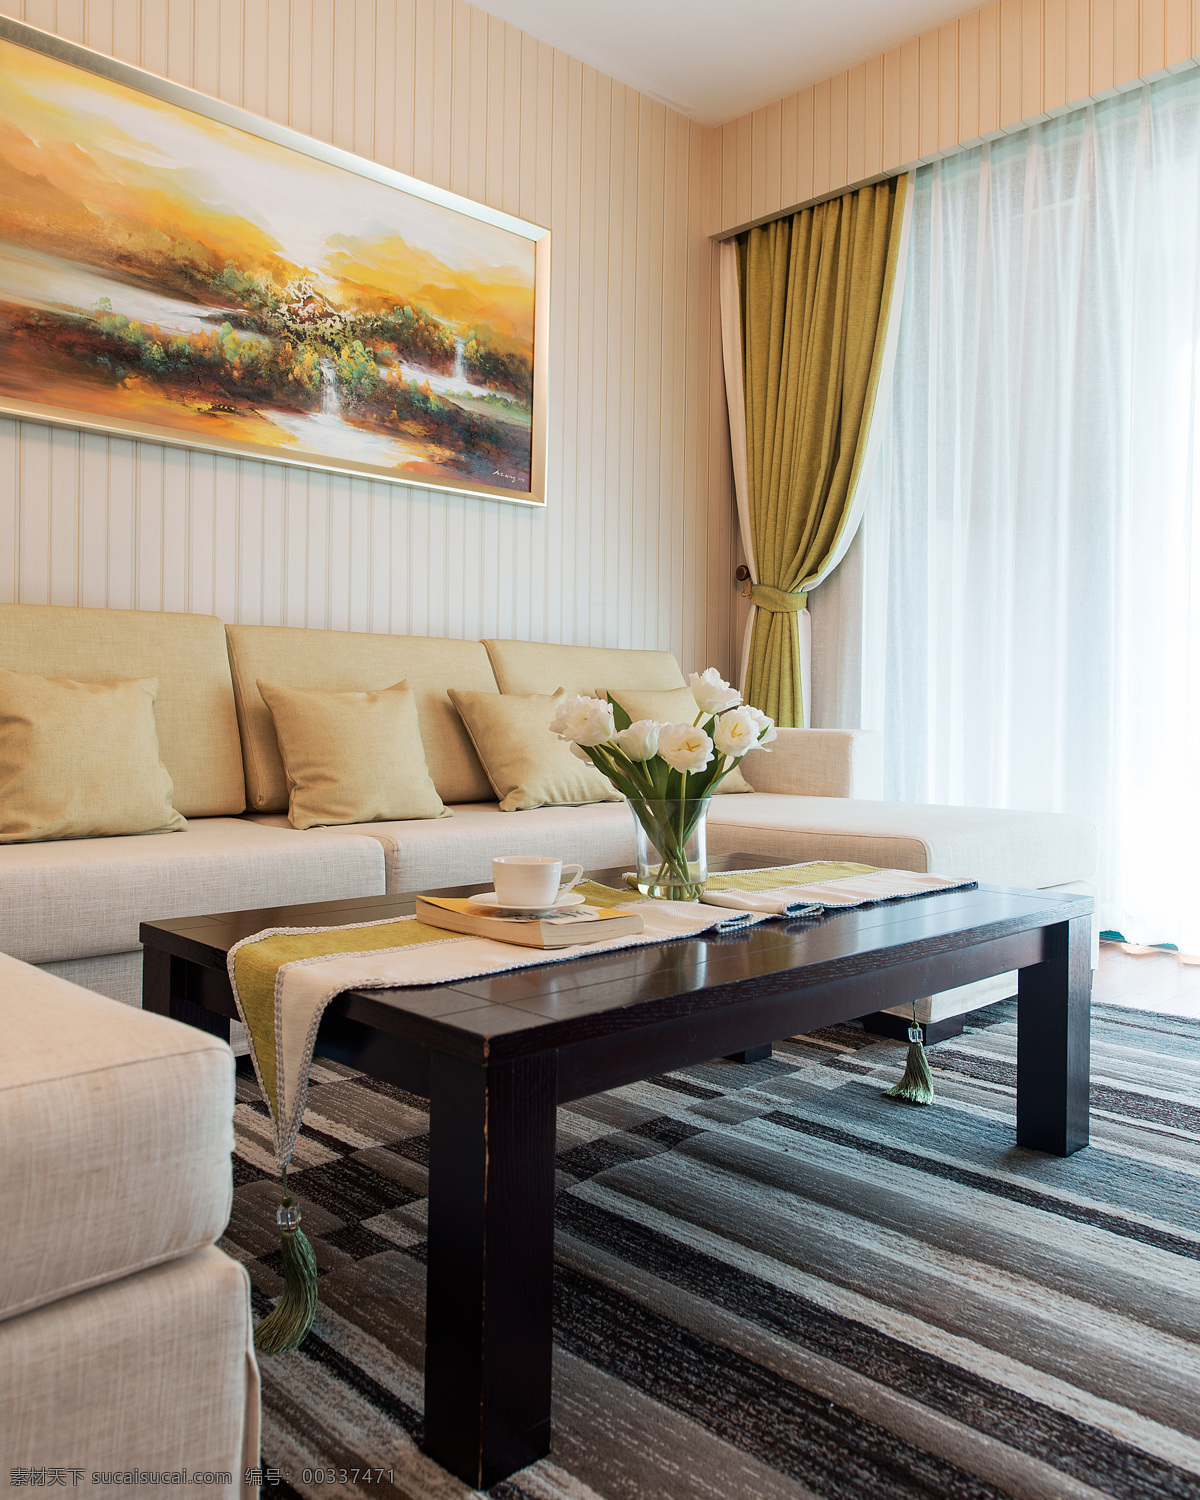 现代 温馨 客厅 粉色 条纹 背景 墙 室内装修 效果图 深色条纹地毯 客厅装修 木制茶几 杏色沙发